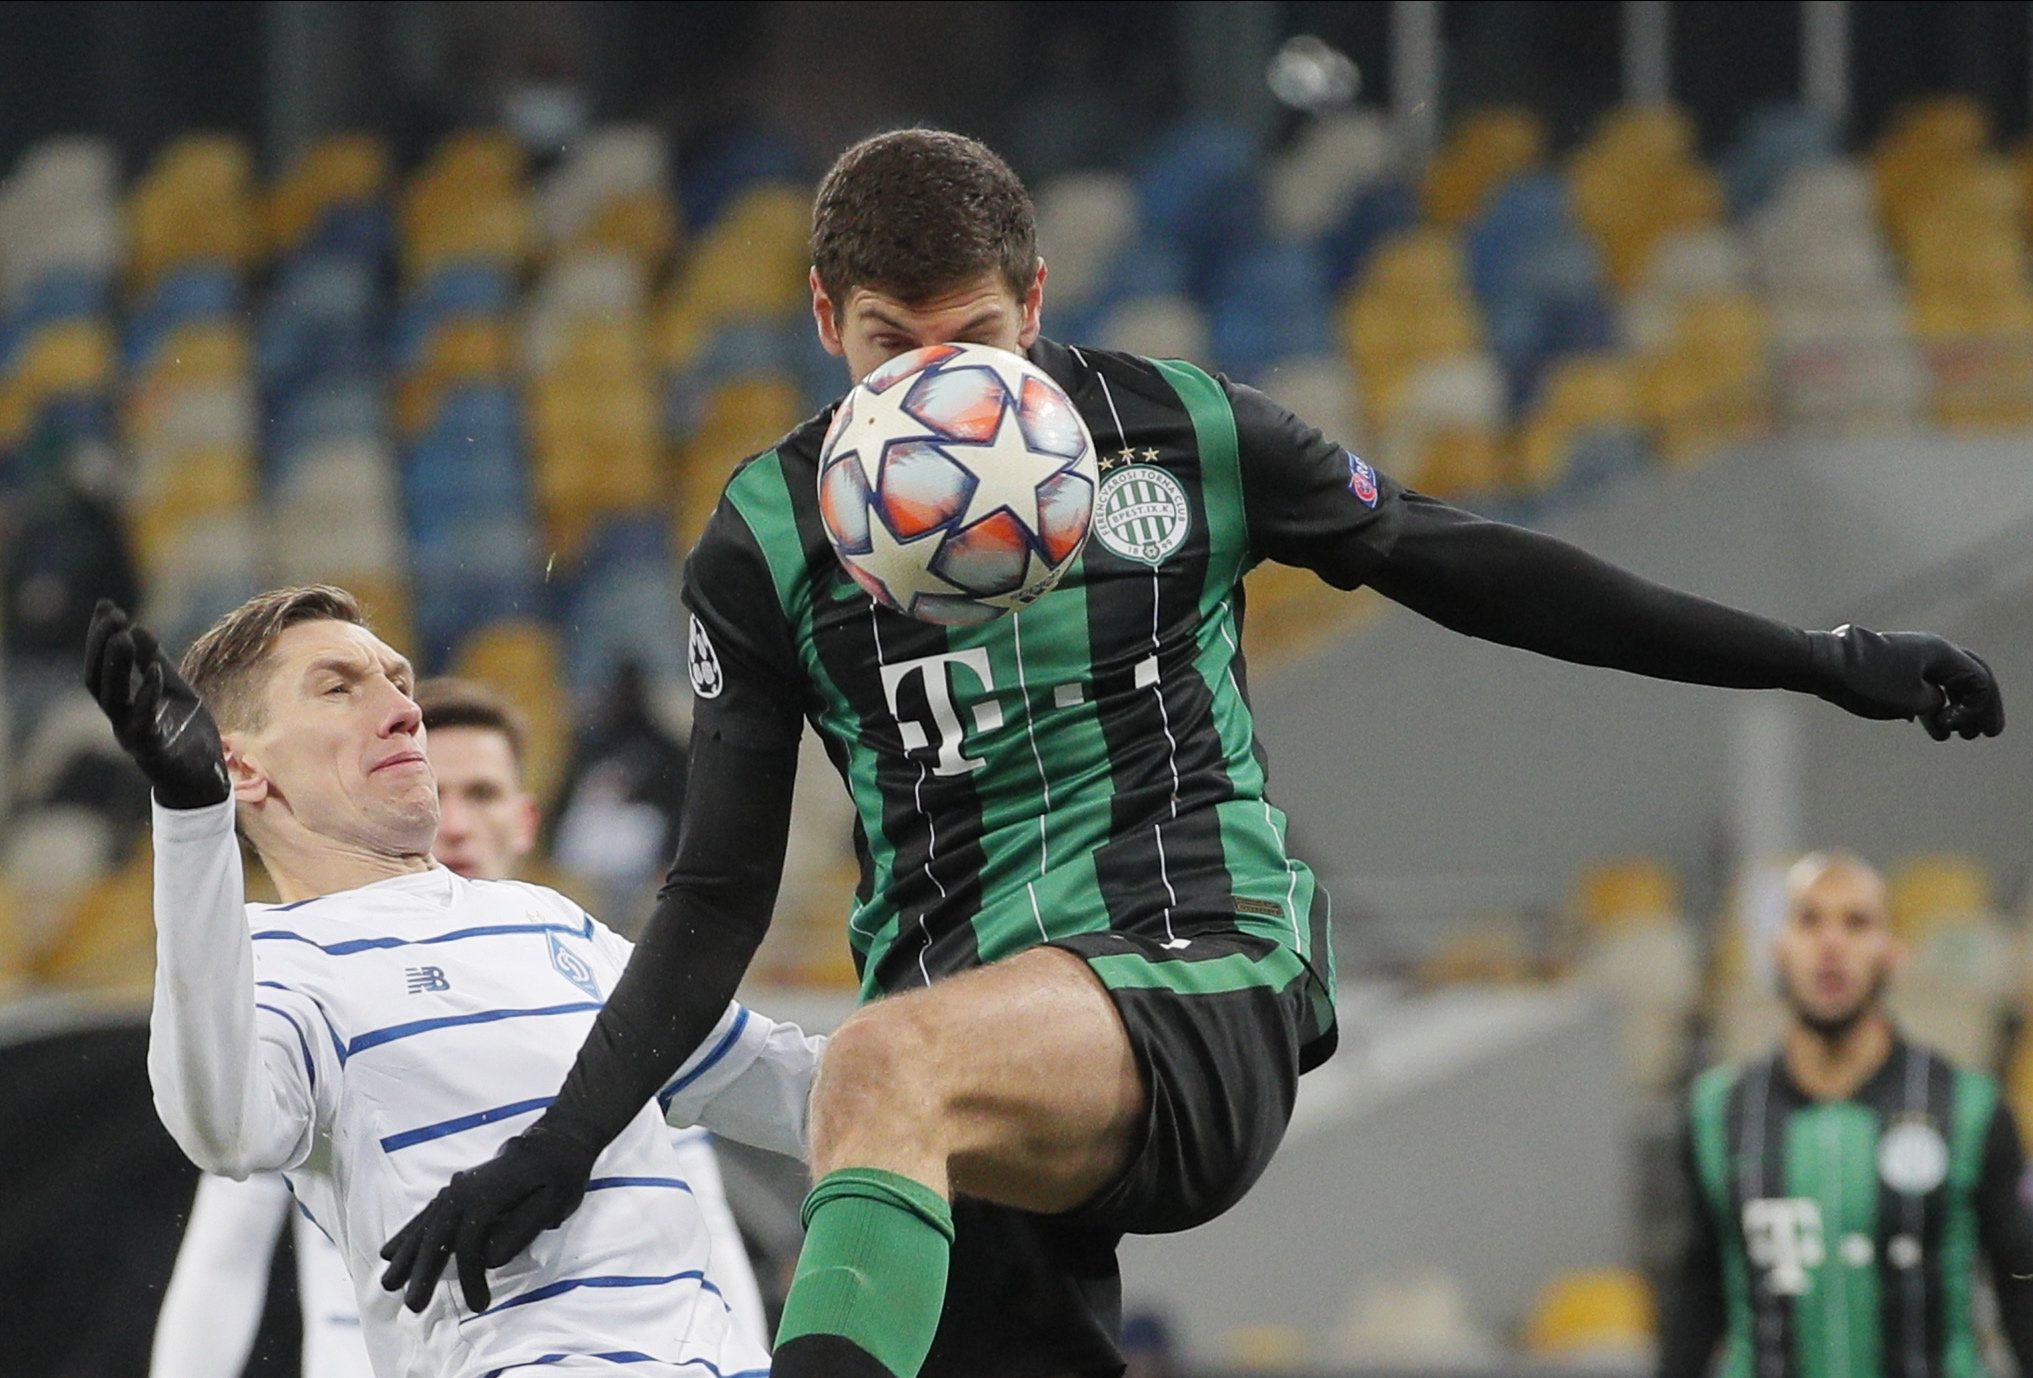 Lasha Dvali küzd a labdáért a Dinamo Kijev ellen elveszített meccsen. / Fotó: MTI/EPA/Szerhij Dolzsenko